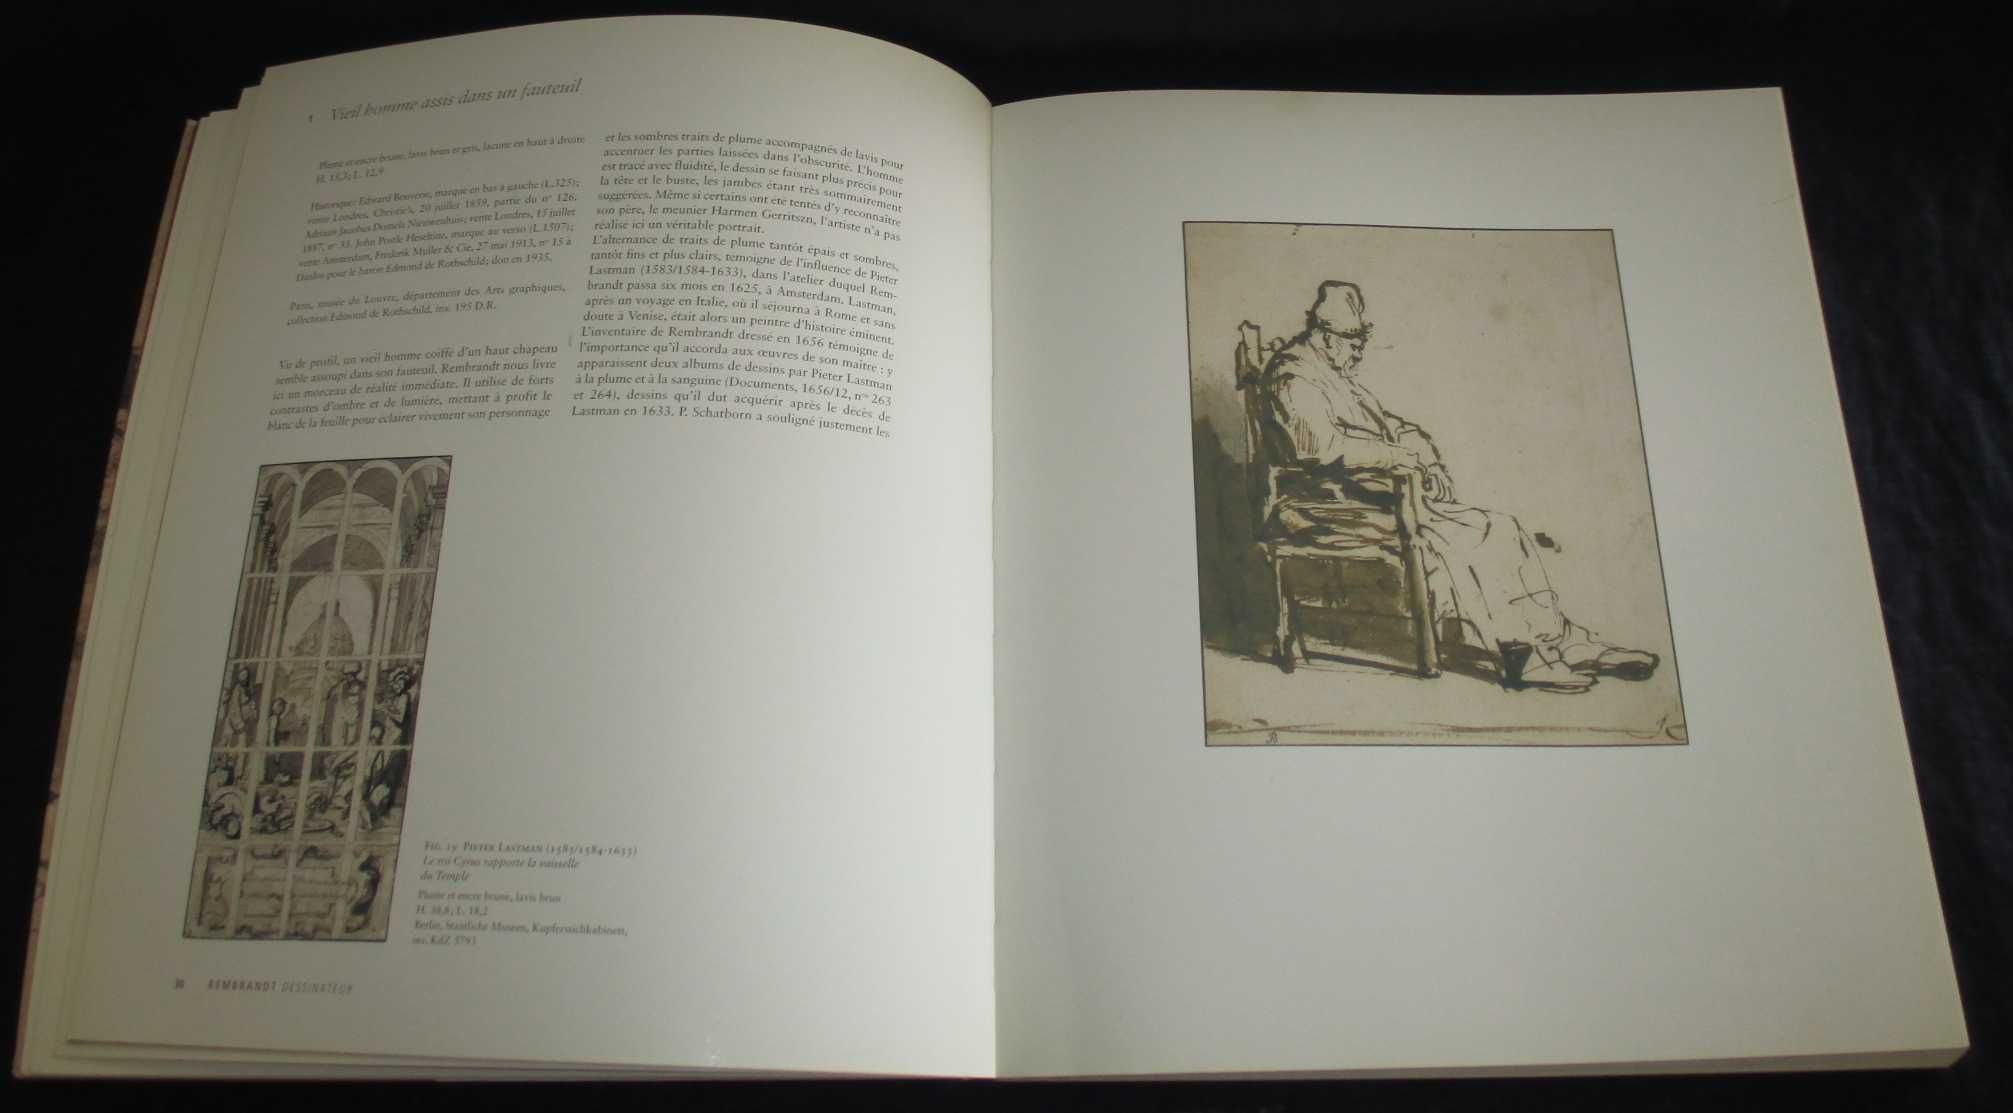 Livro Rembrandt dessinateur Museé du Louvre Éditions